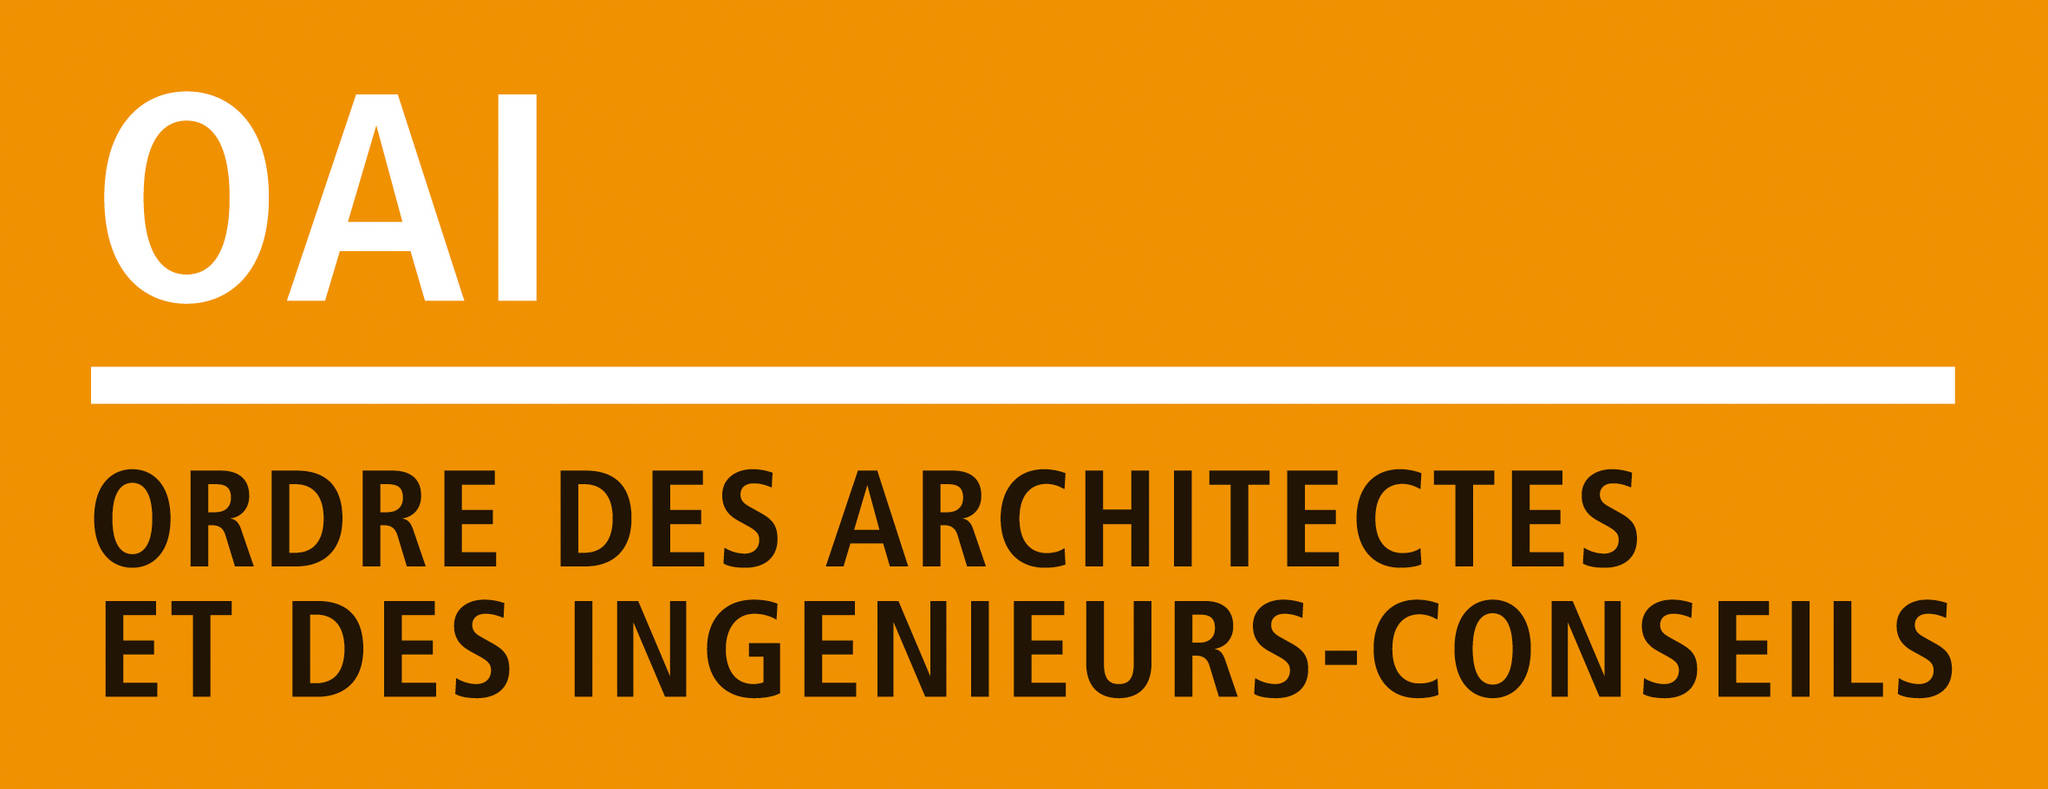 Ordre des Architectes et Ingénieurs-conseils (OAI)